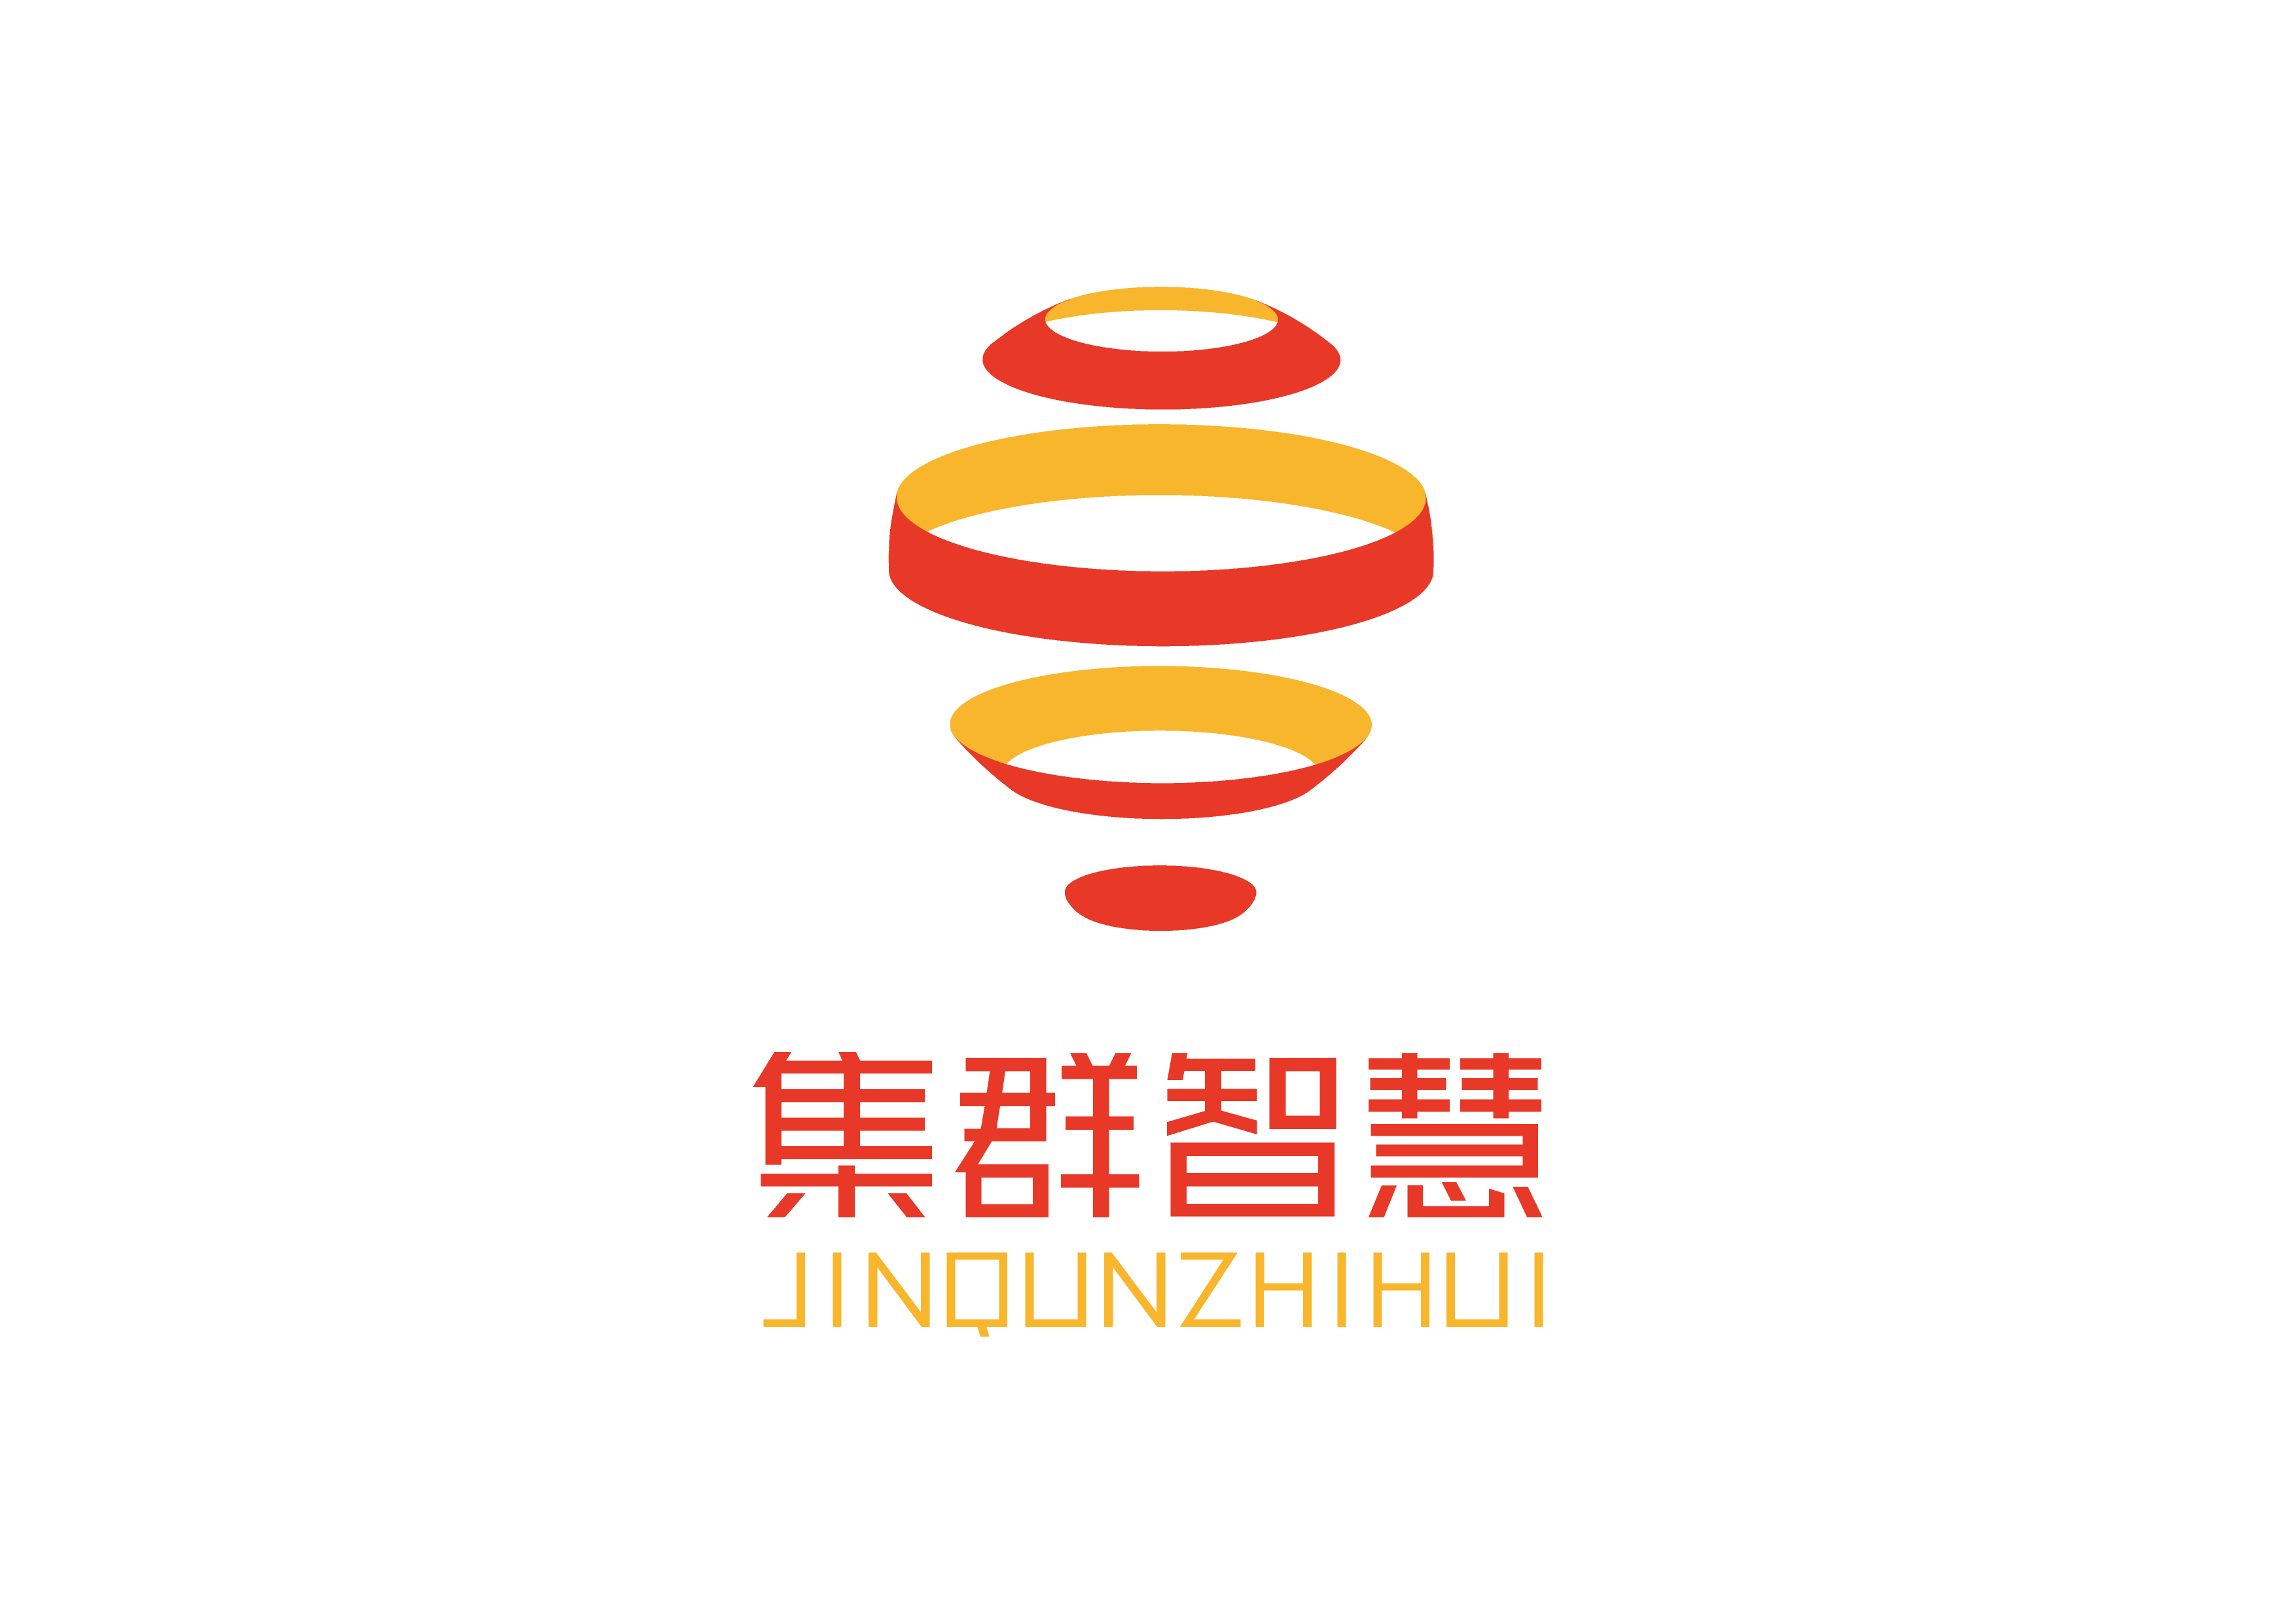 Ȩ룬Ⱥǻhttps://www.jiqunzhihui.net